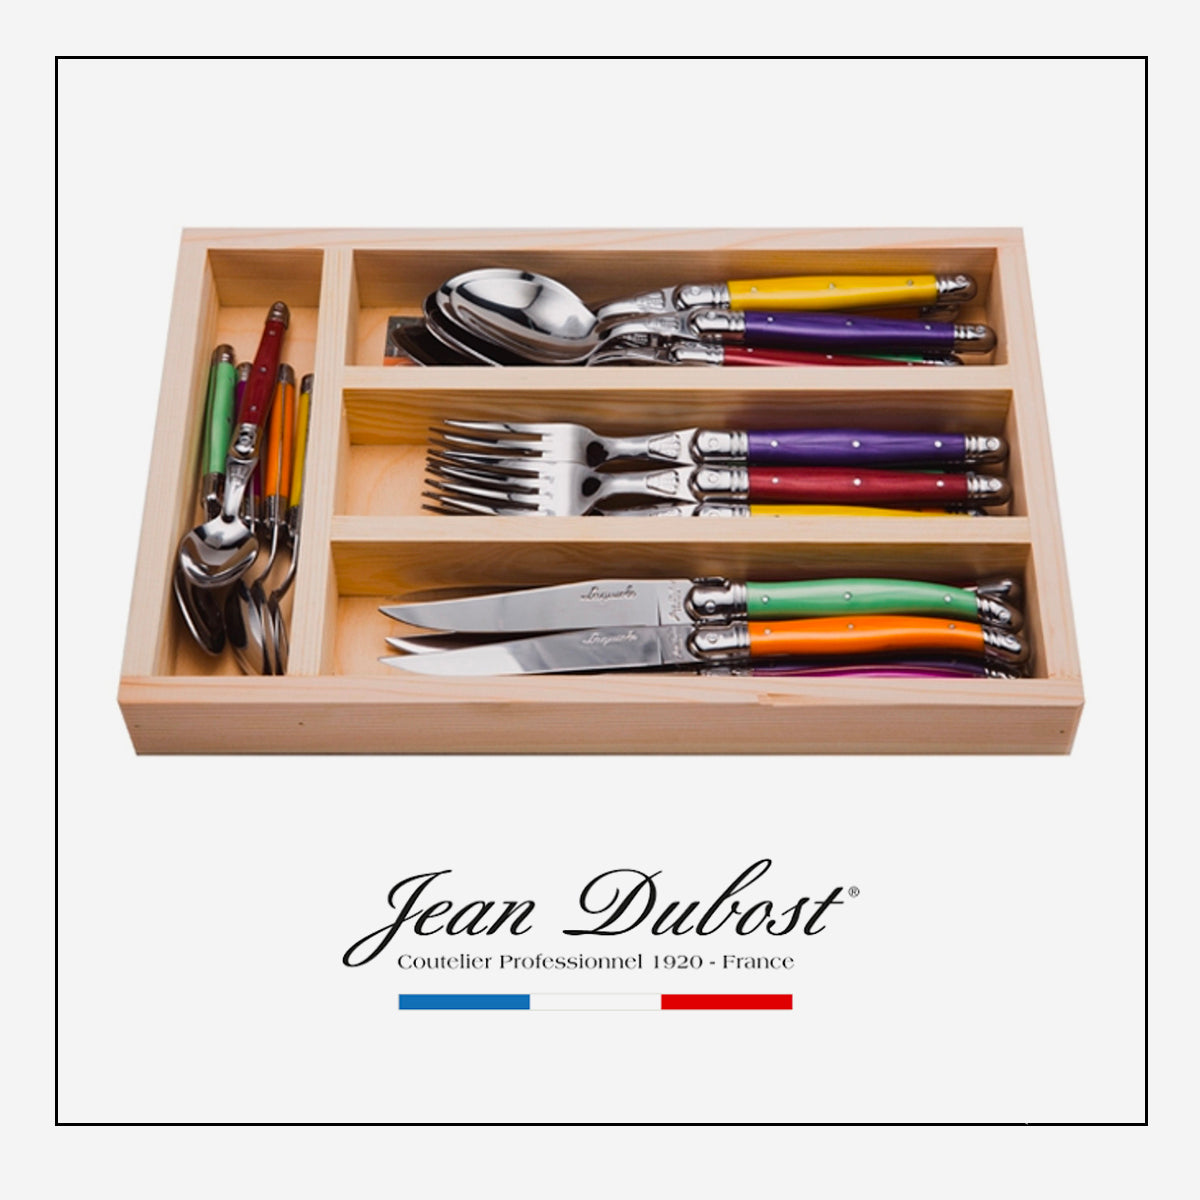 Jean Dubost 6 Steak Knives Pink Handles in Block